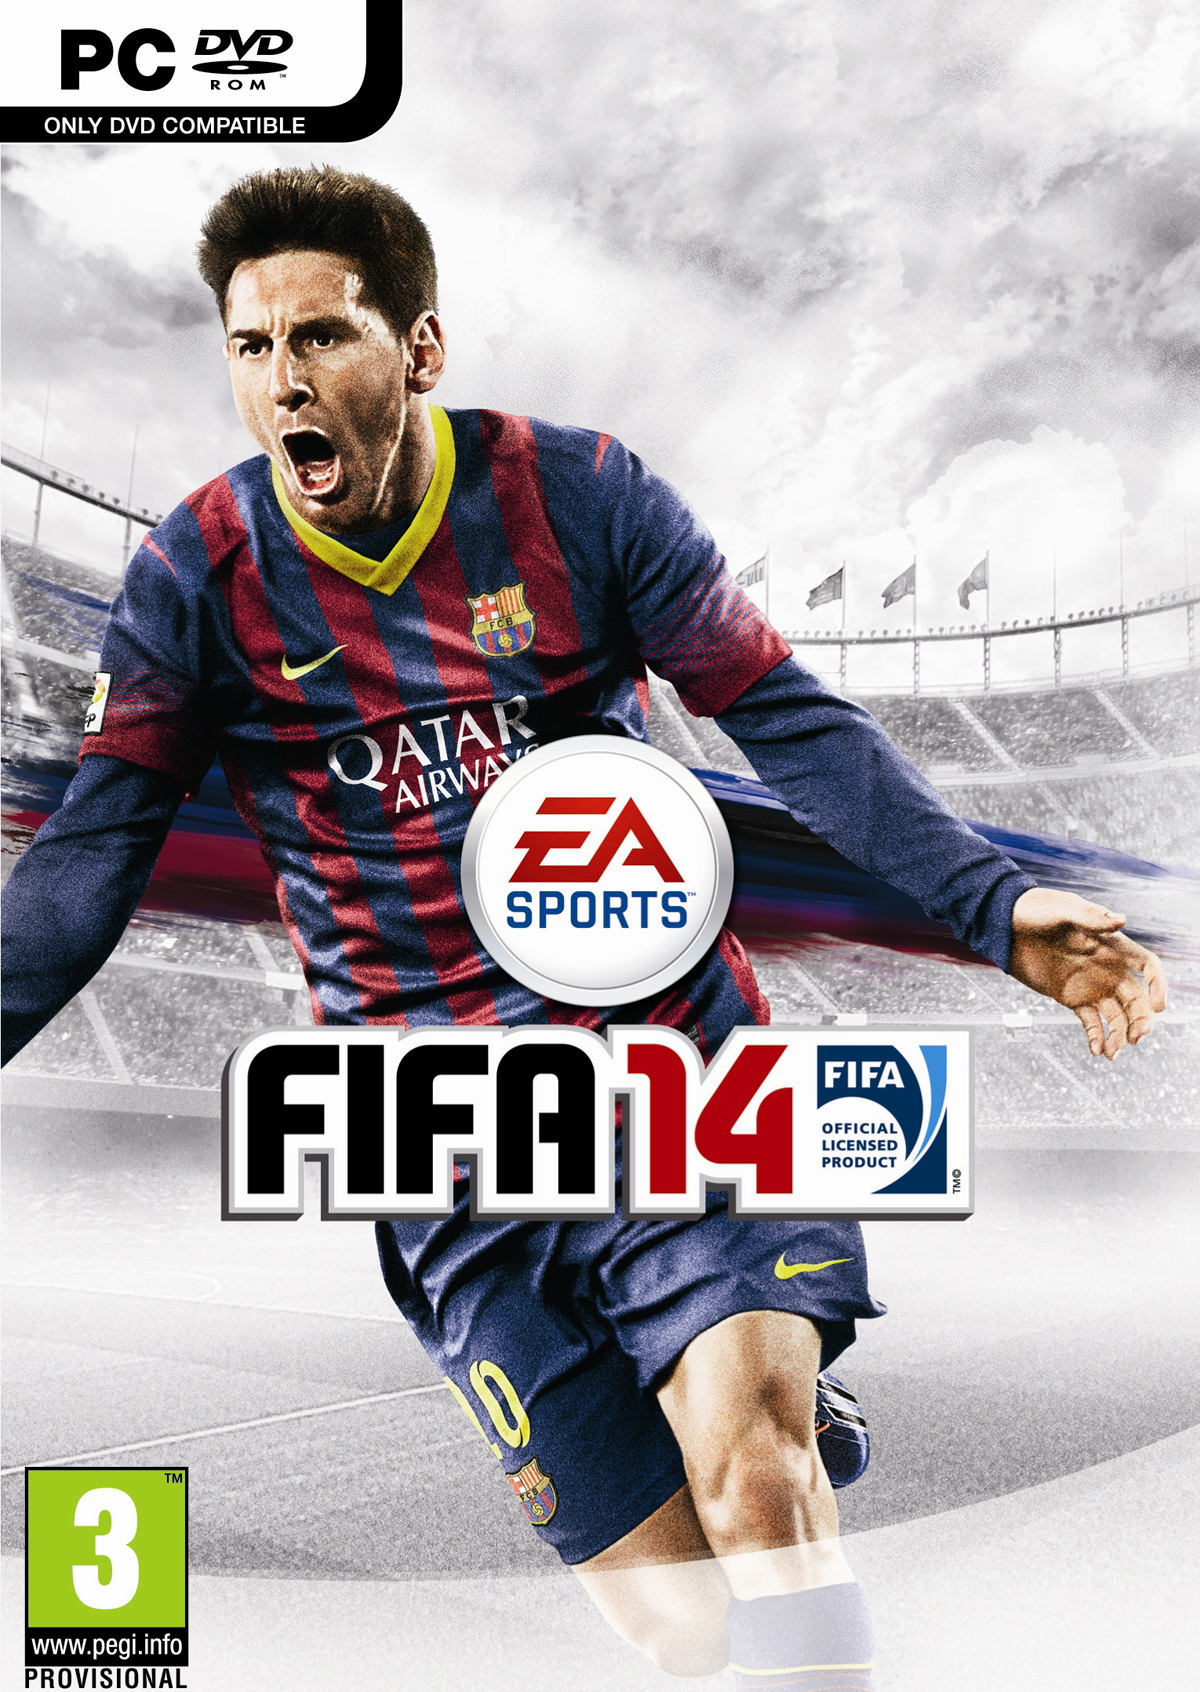 Na krabičce FIFA 14 bude hvězda Messi 84130